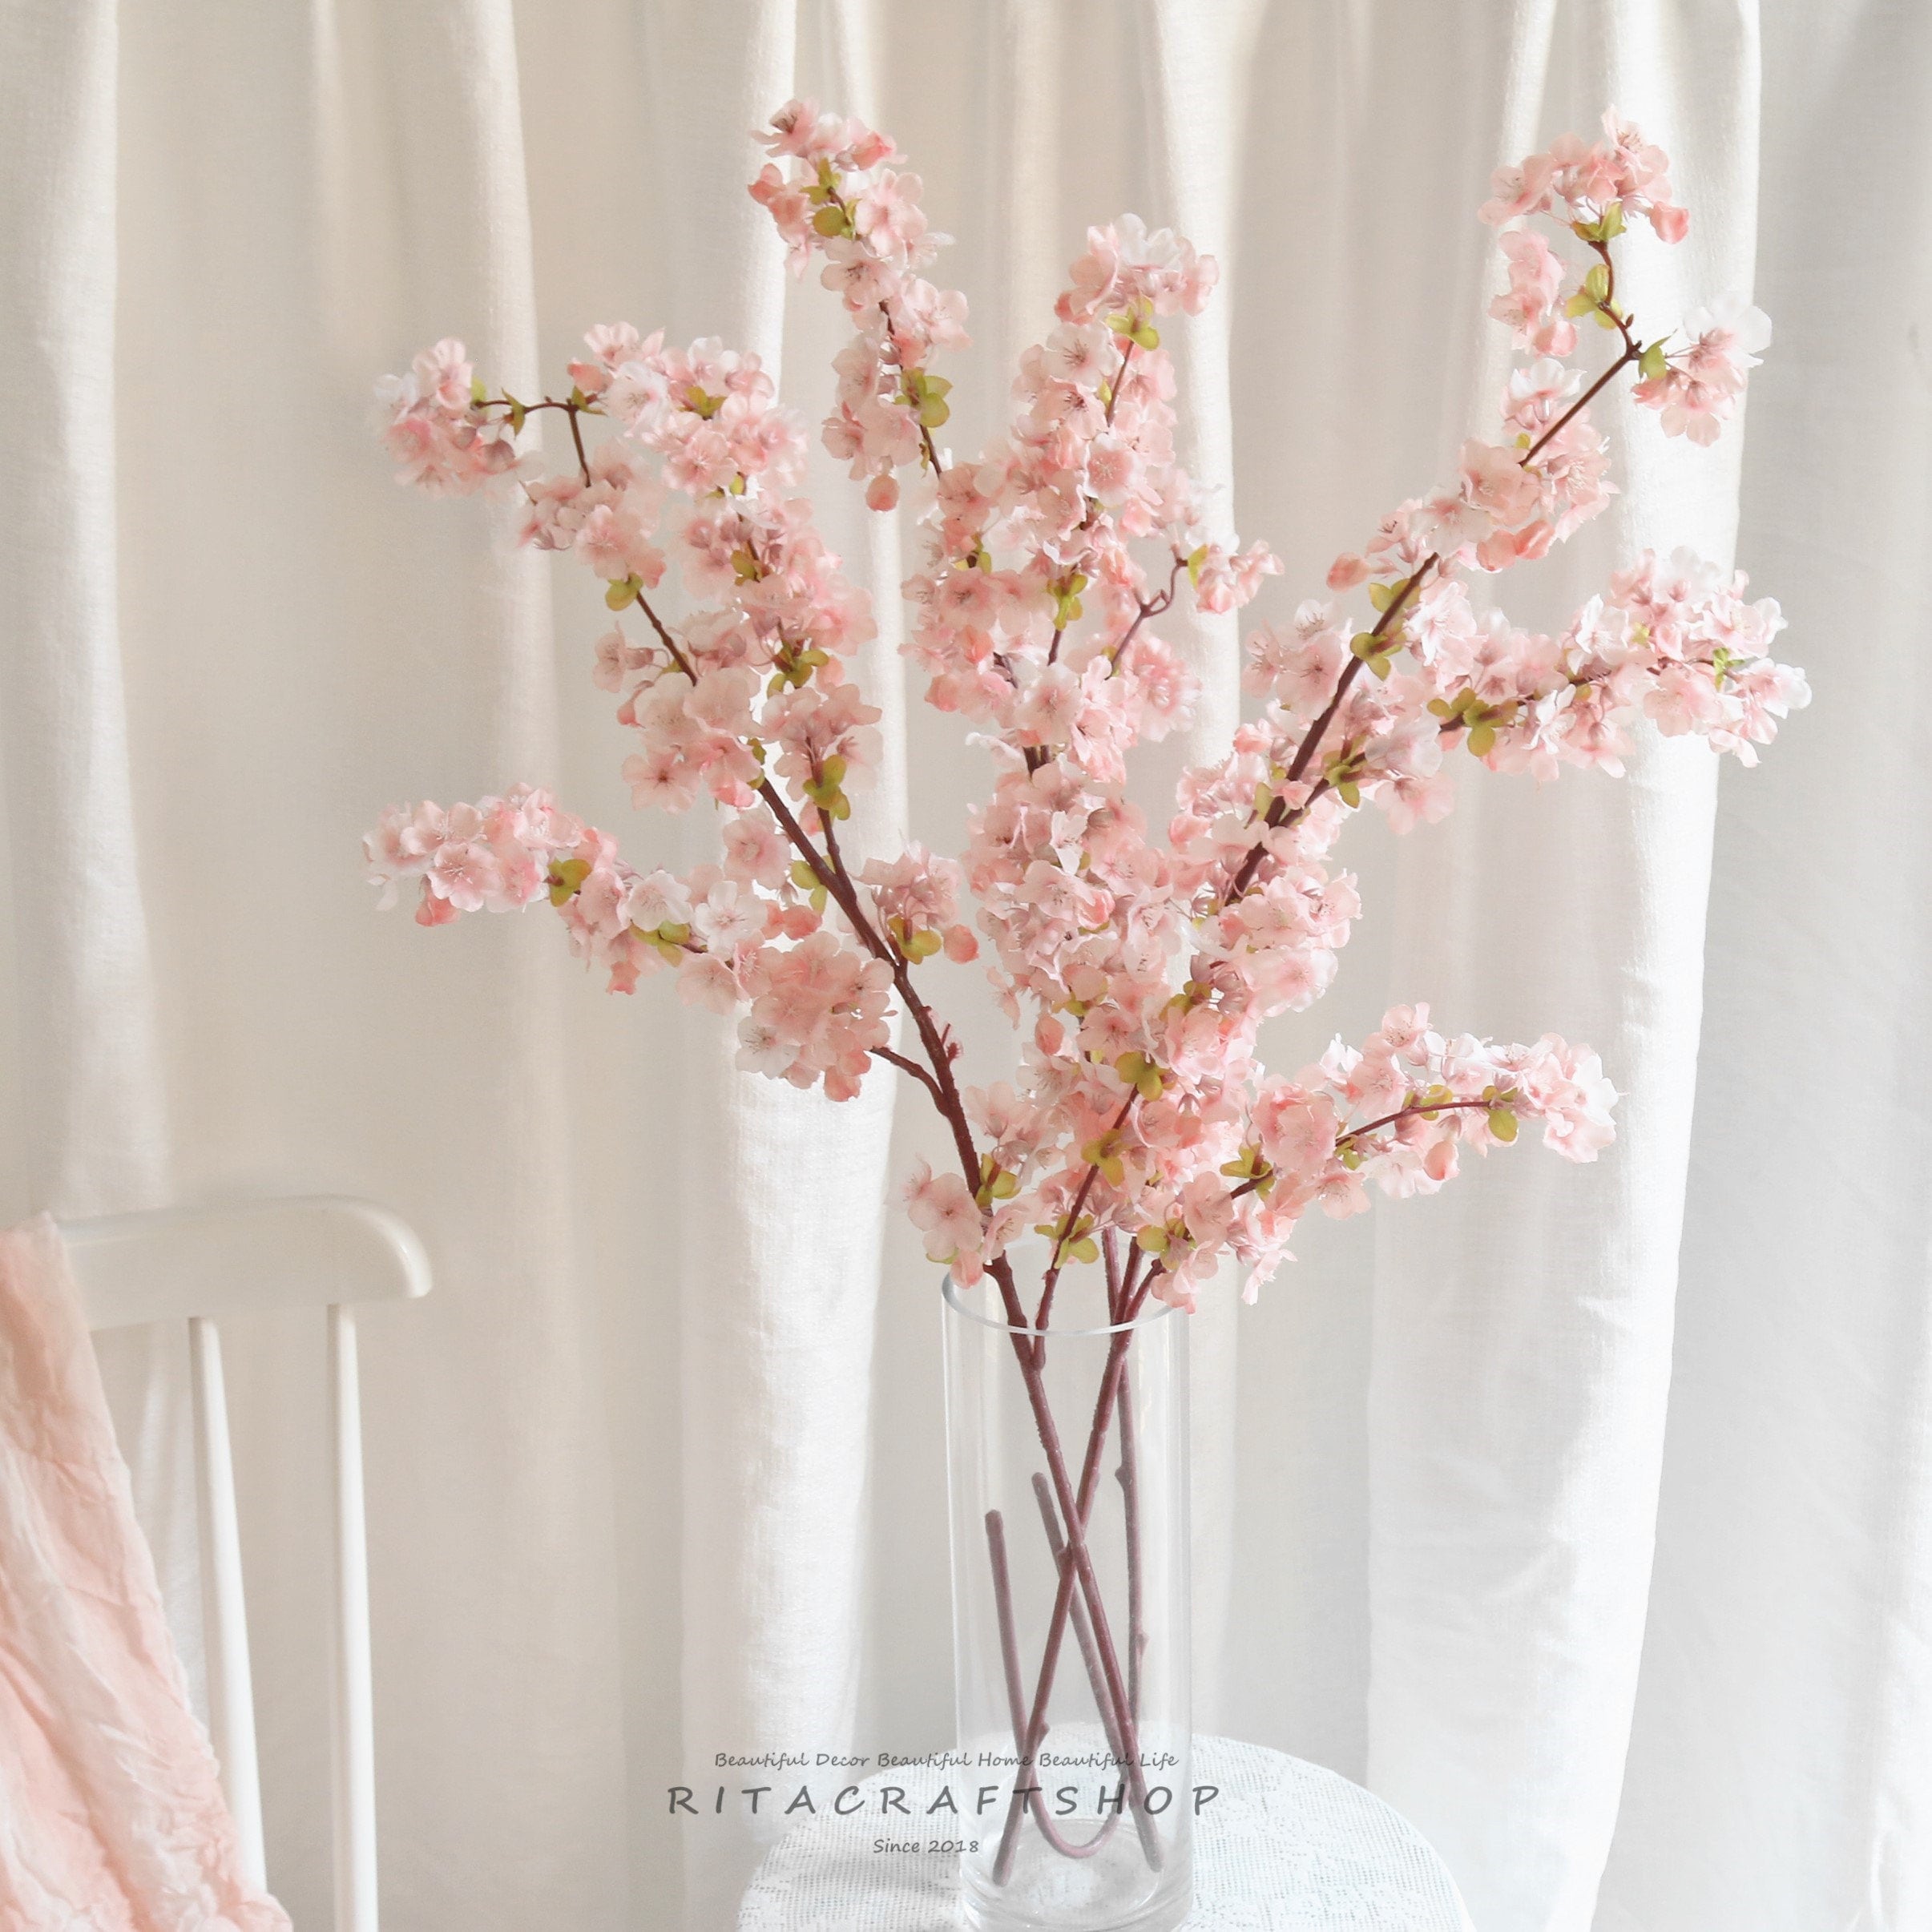 Fashion retro light luxury cherry blossom peach blossom necklace